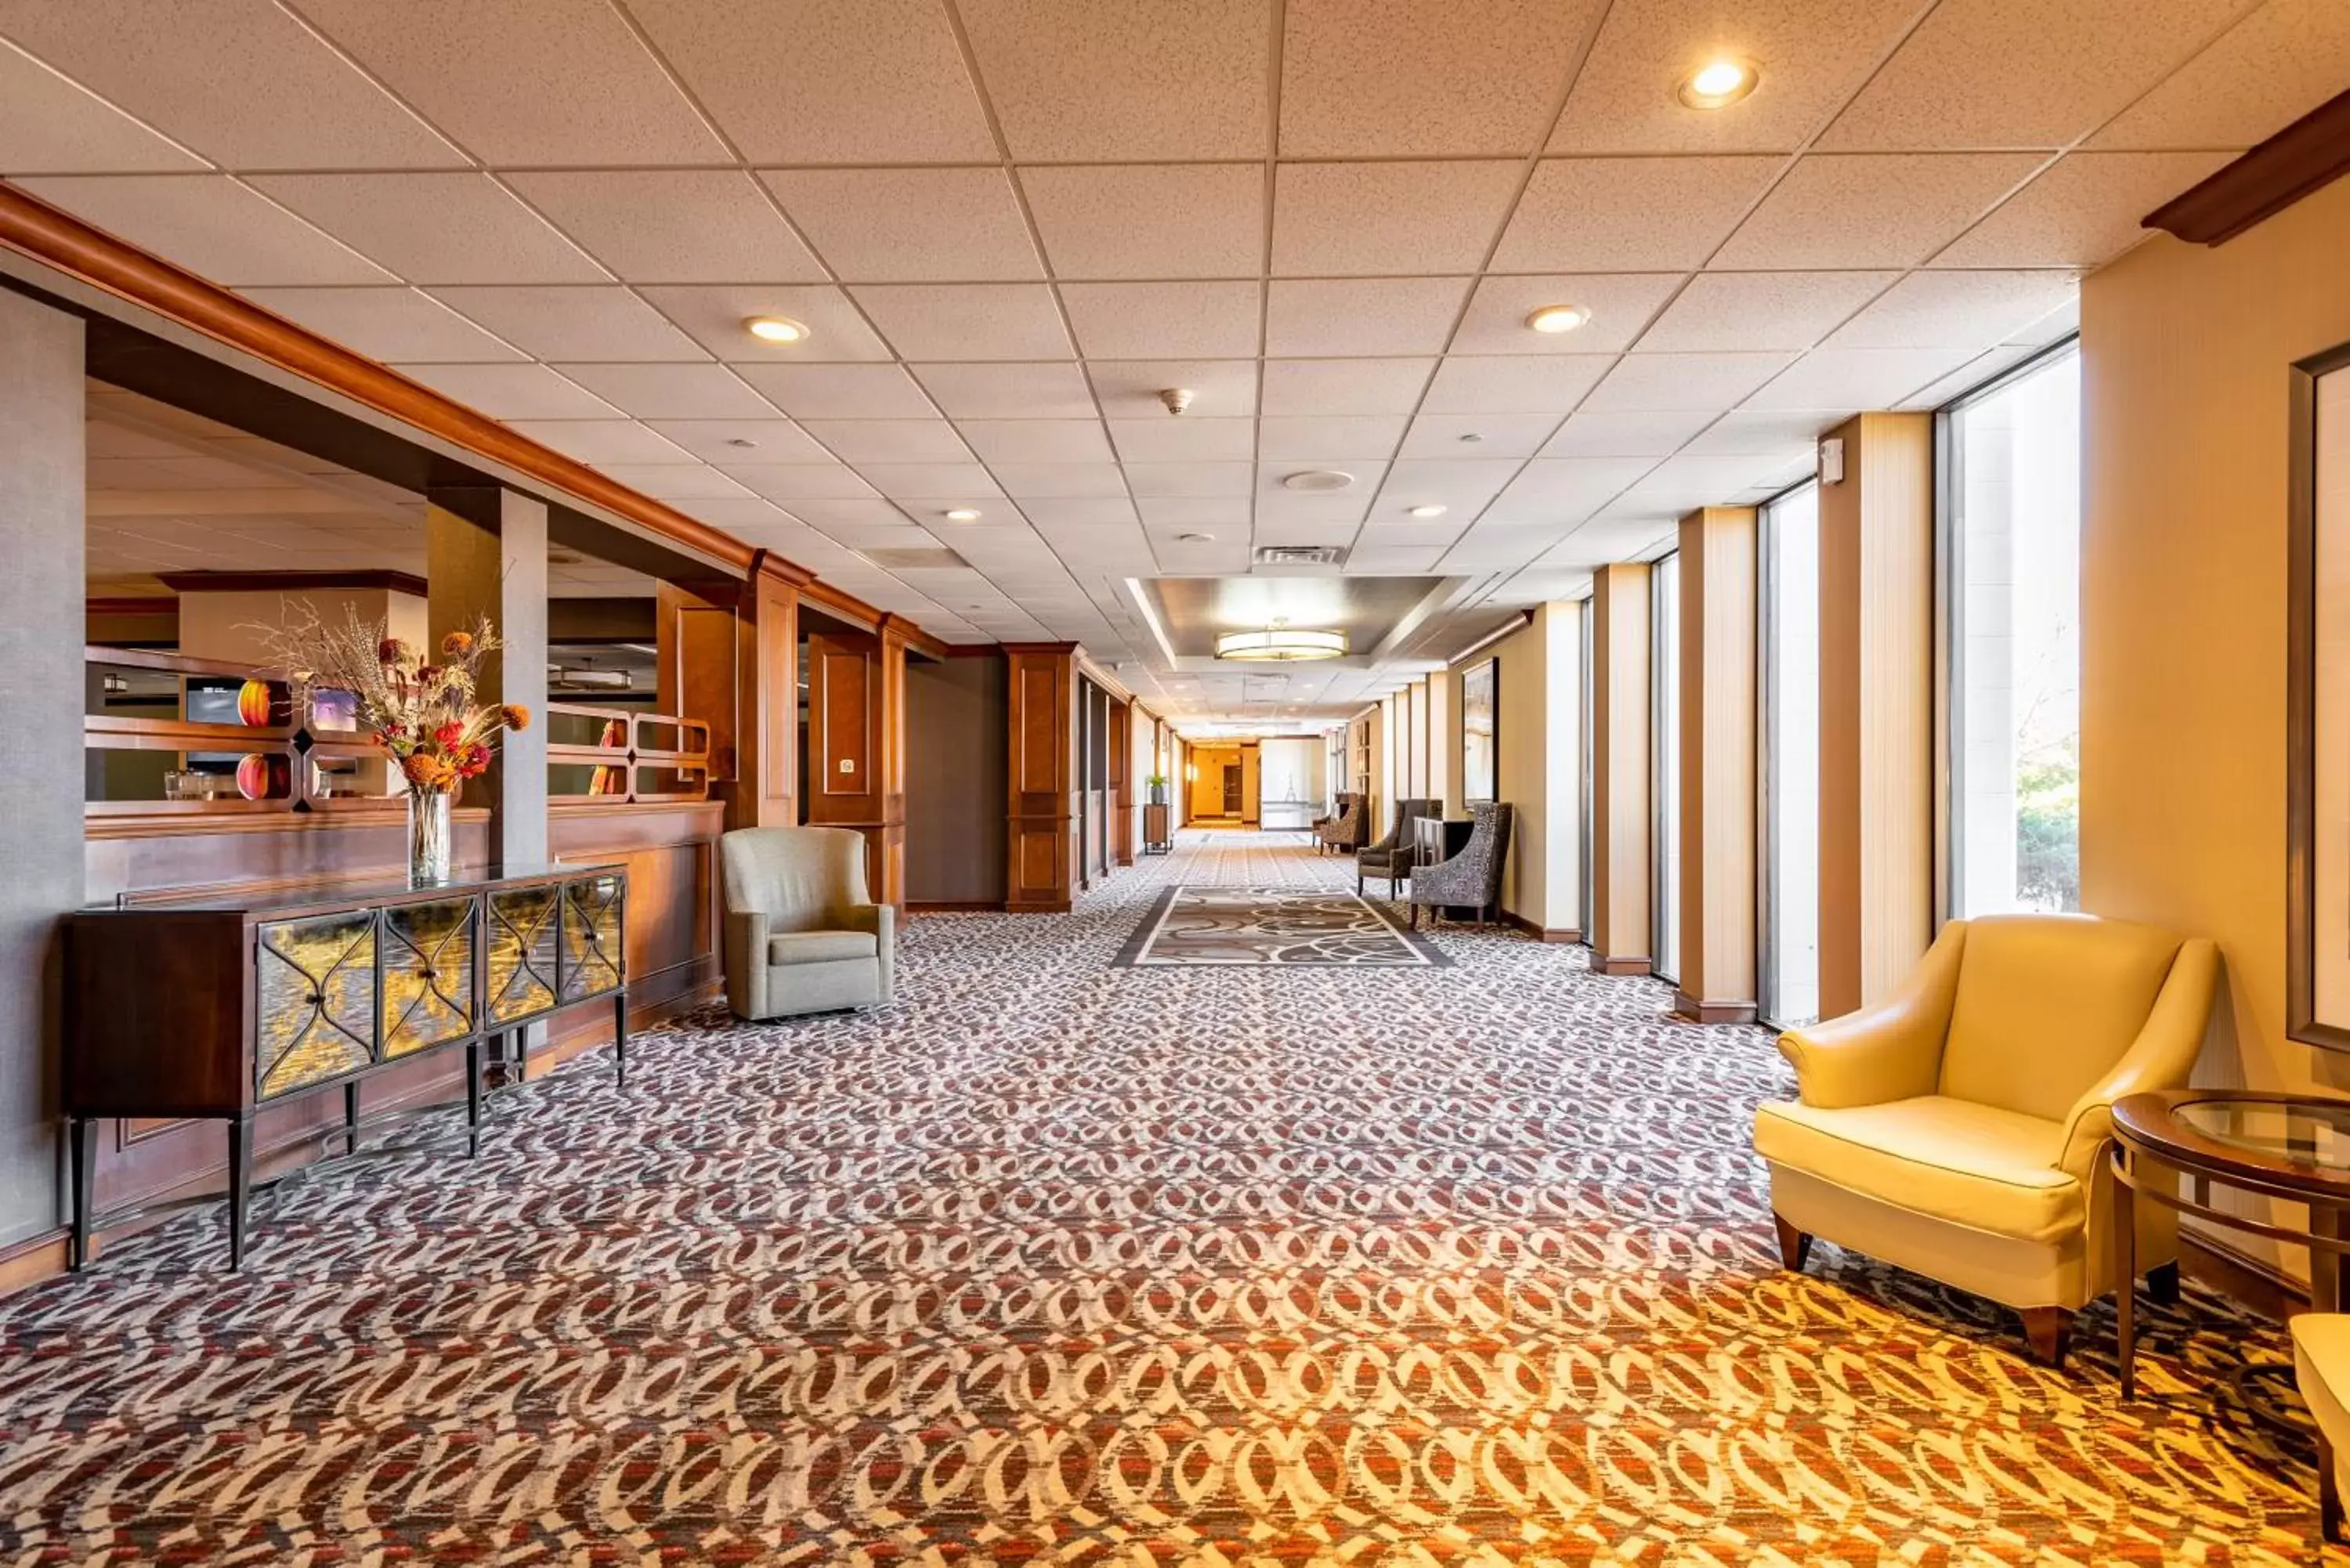 Lobby or reception in Wyndham Omaha Hotel - West Dodge